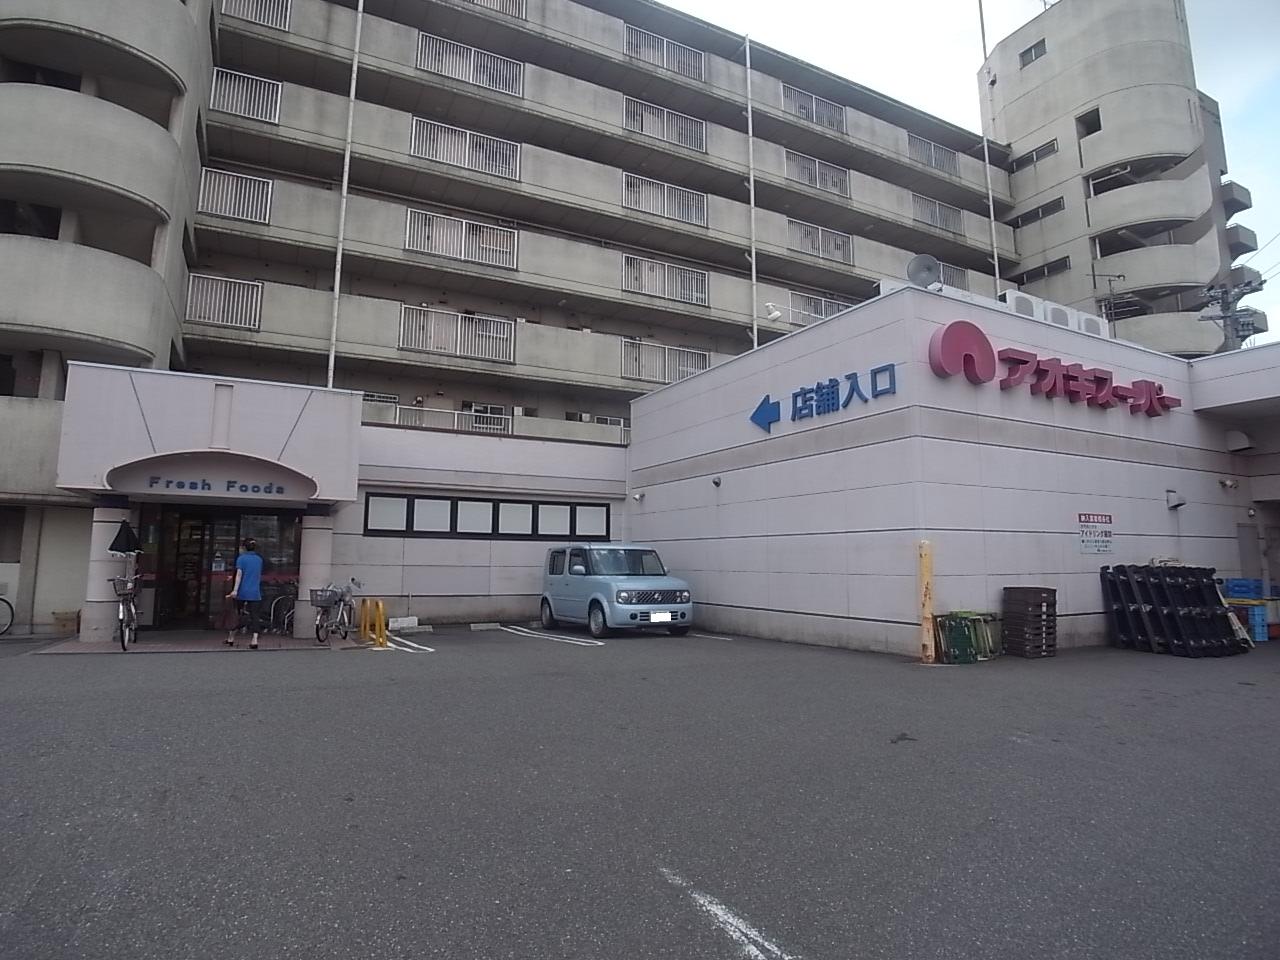 Supermarket. Aoki Super Karasumori store up to (super) 560m